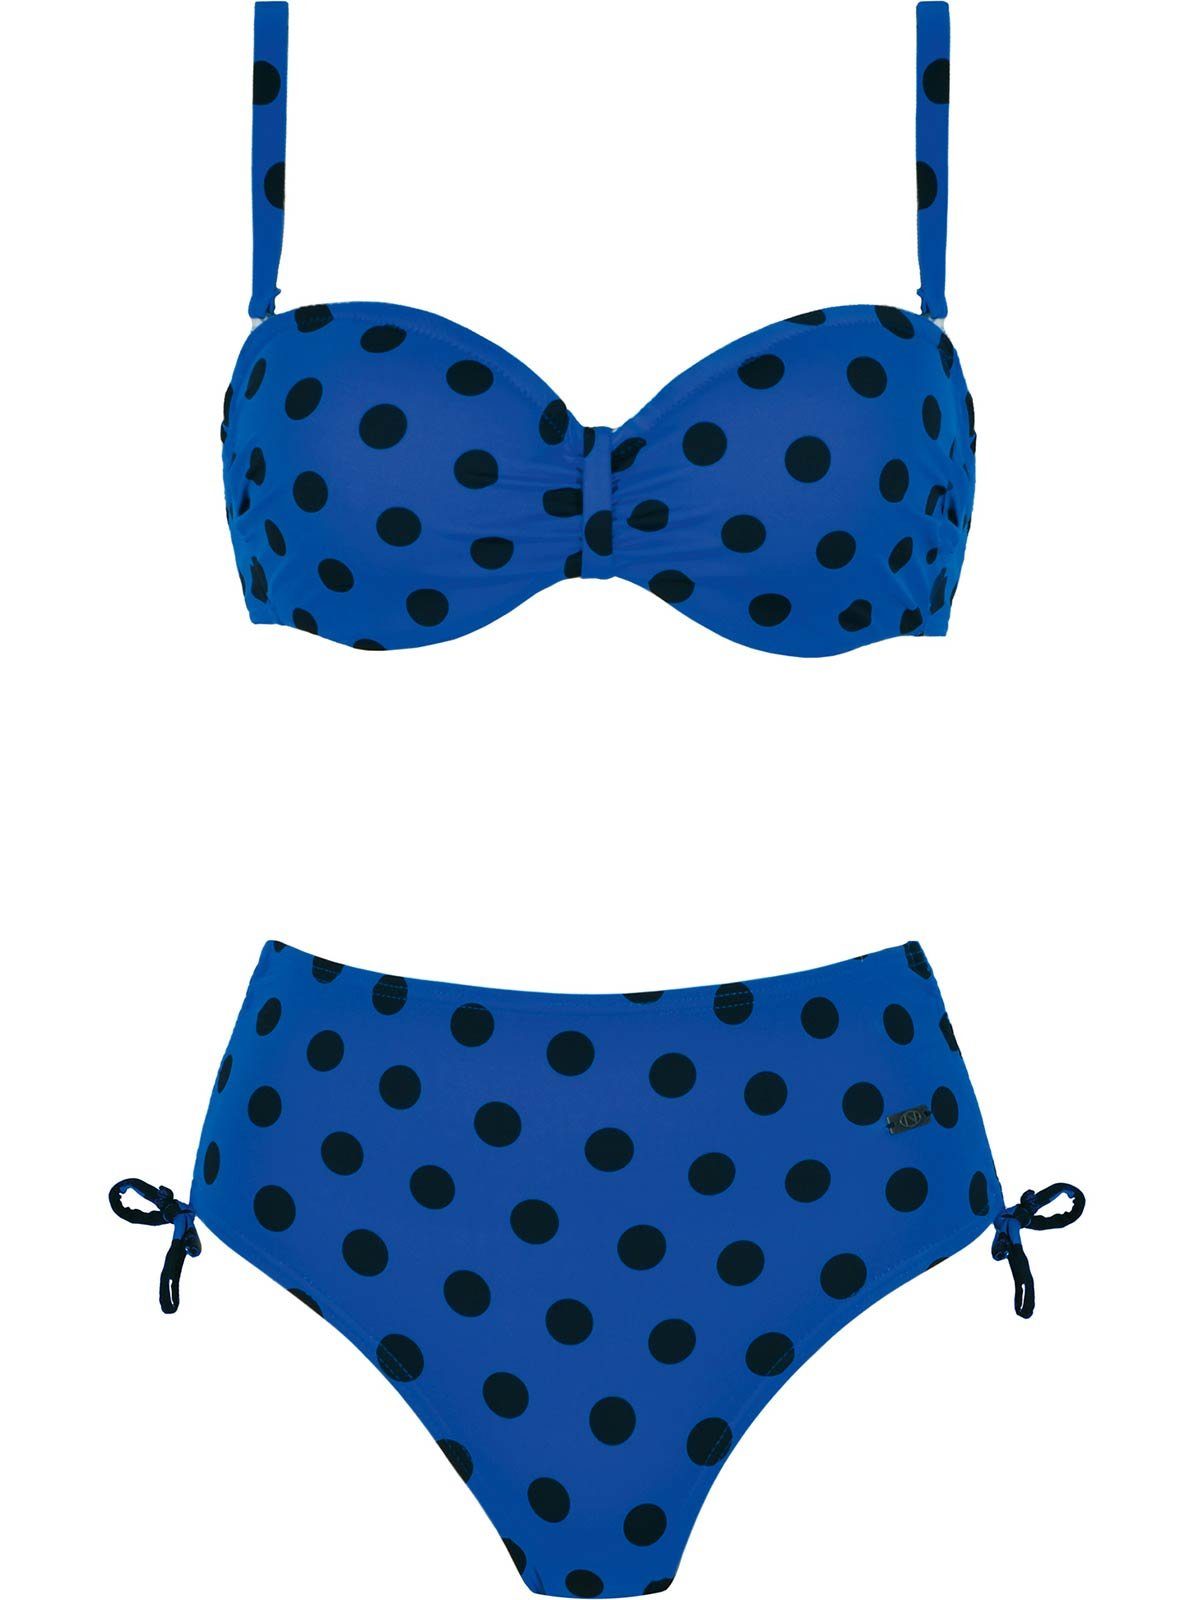 Wäsche/Bademode Bikinis Naturana Balconette-Bikini Schalen Bügel Bikini Beachwear -